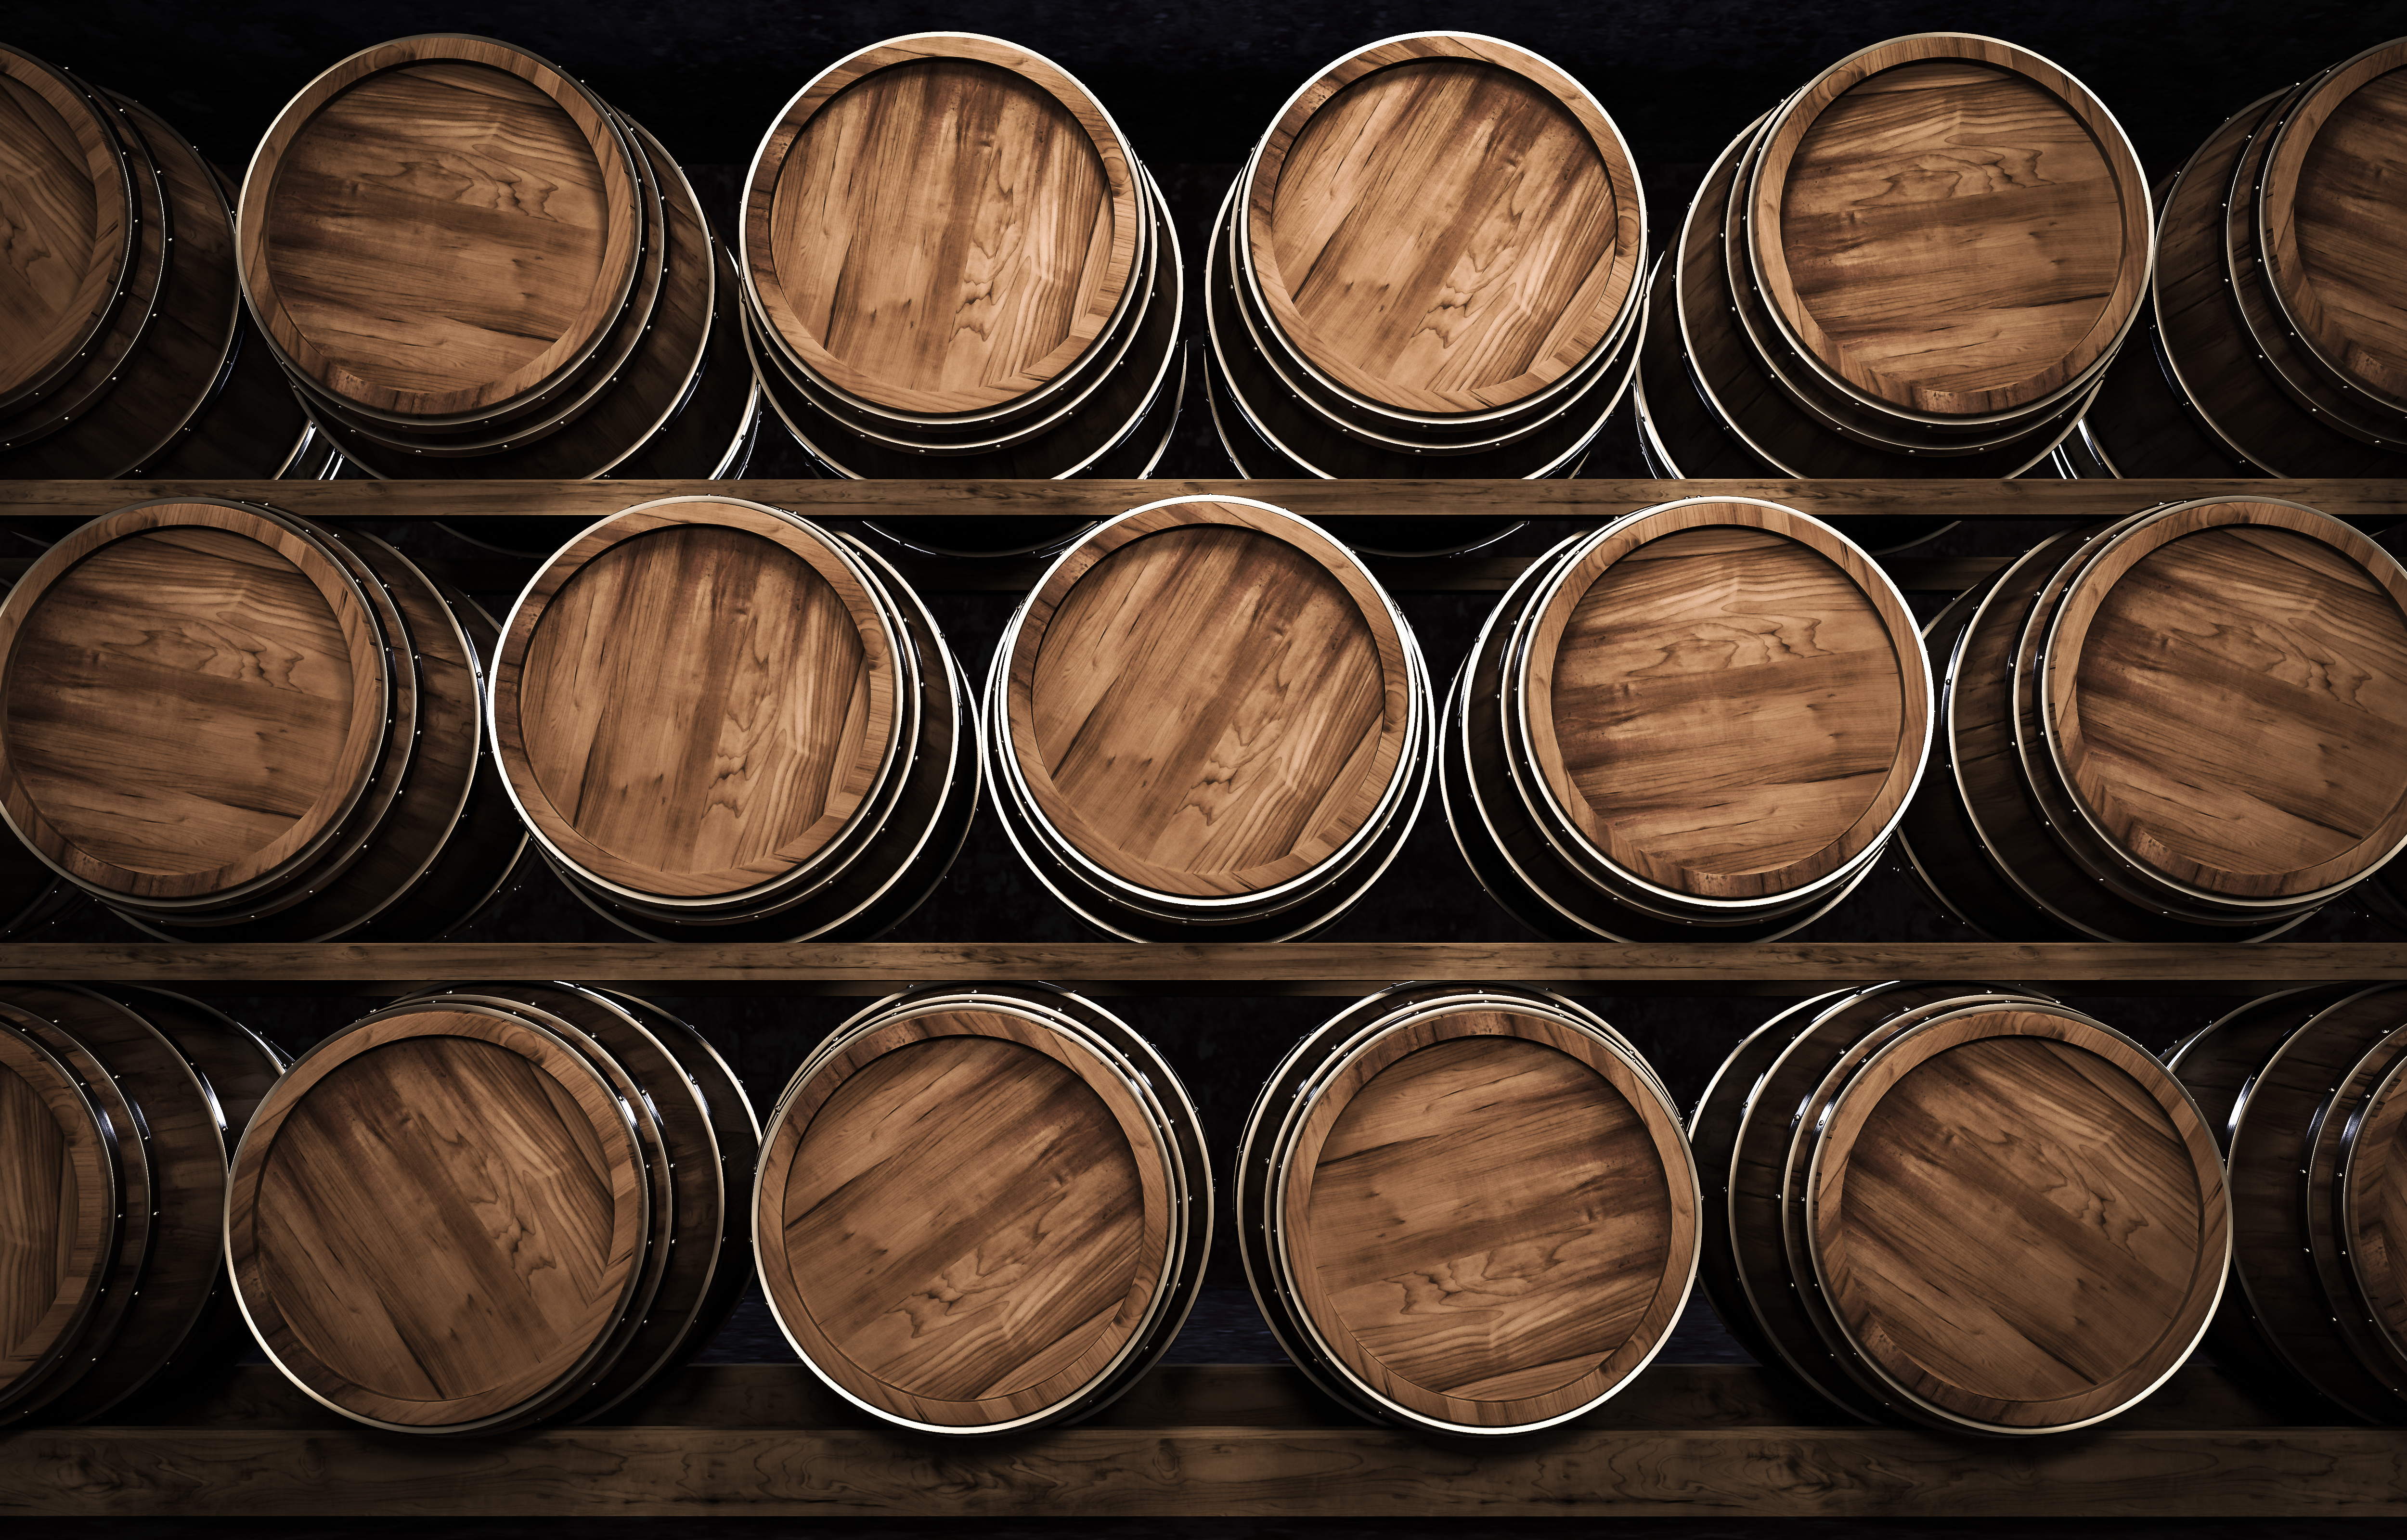 Wooden wine making barrel 3d illustration.